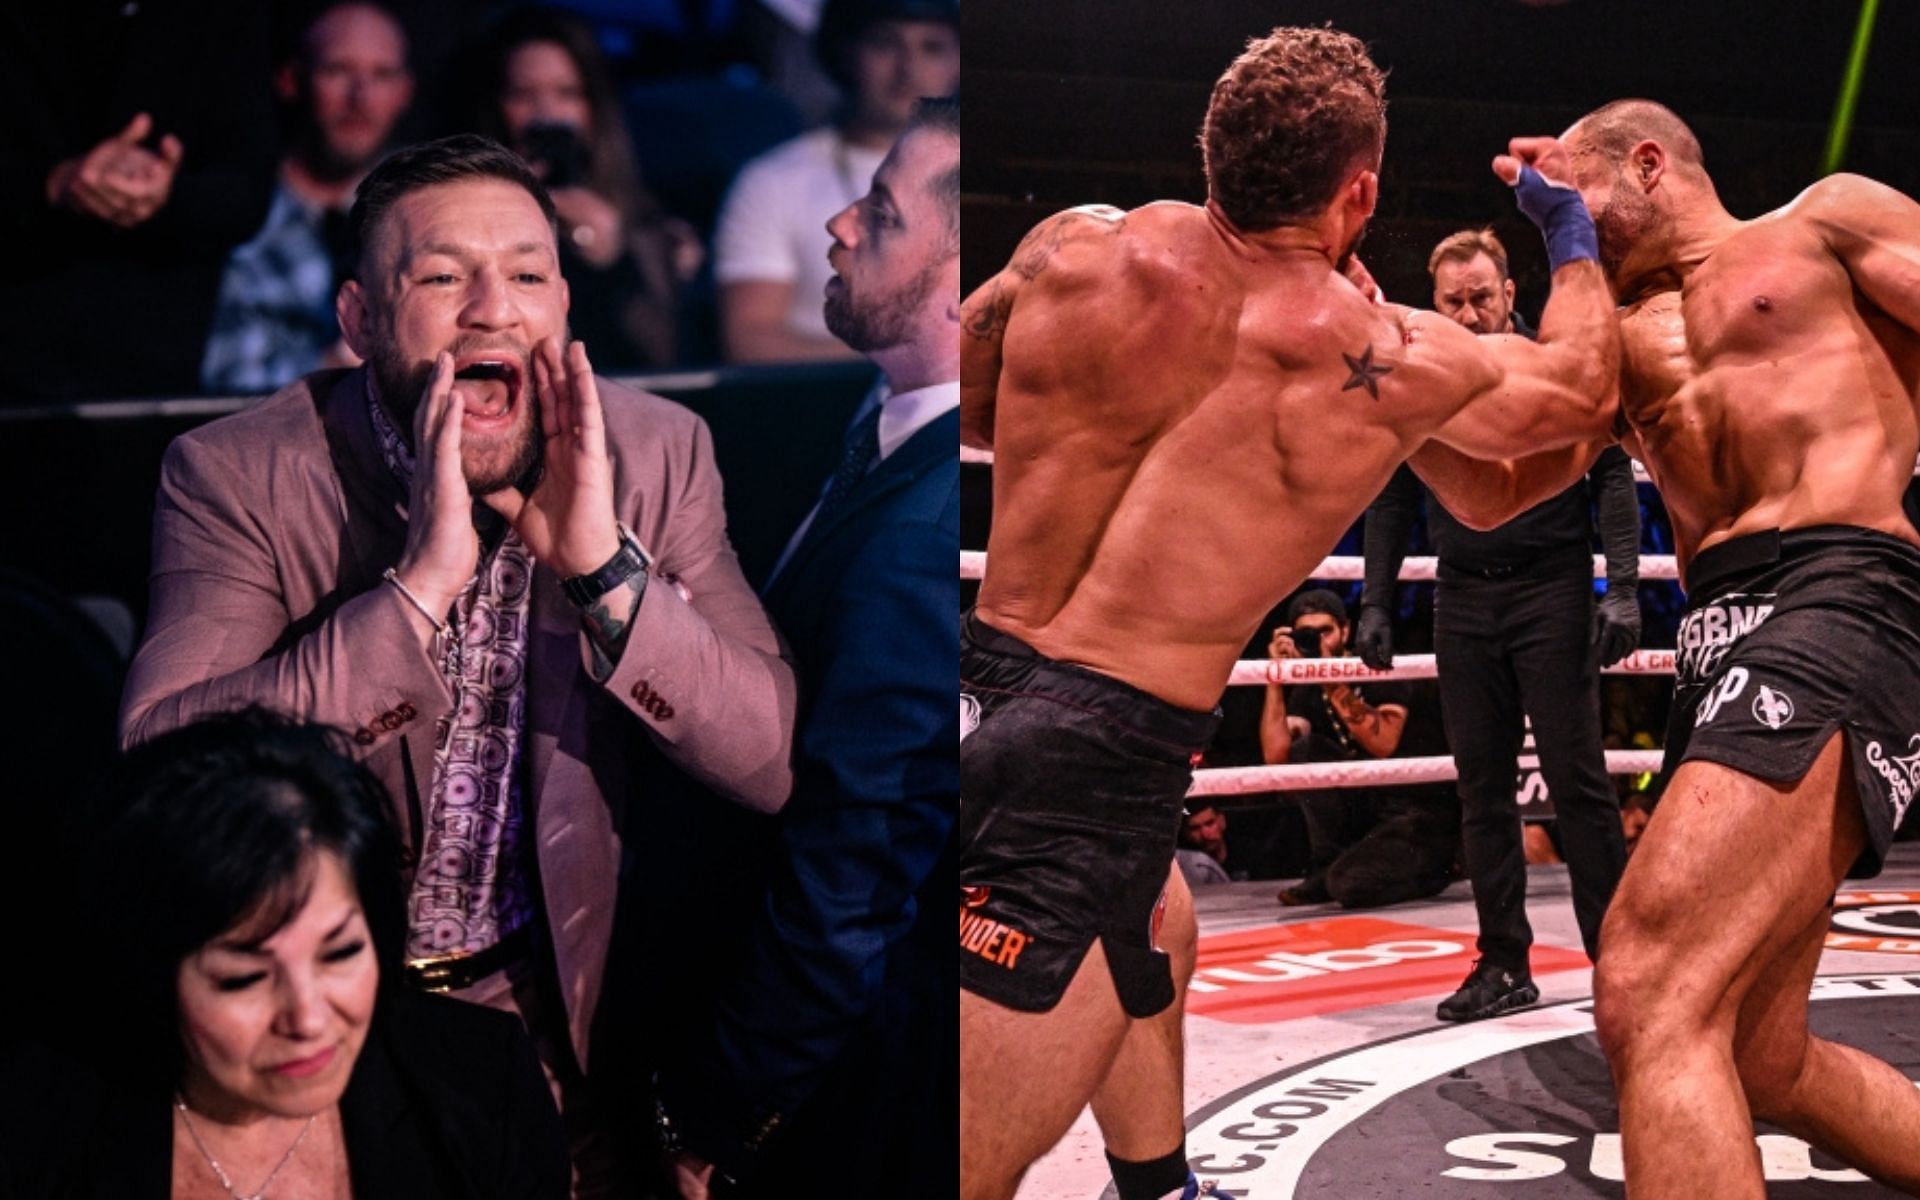 Conor McGregor (left) and Eddie Alvarez vs. Chad Mendes (right)